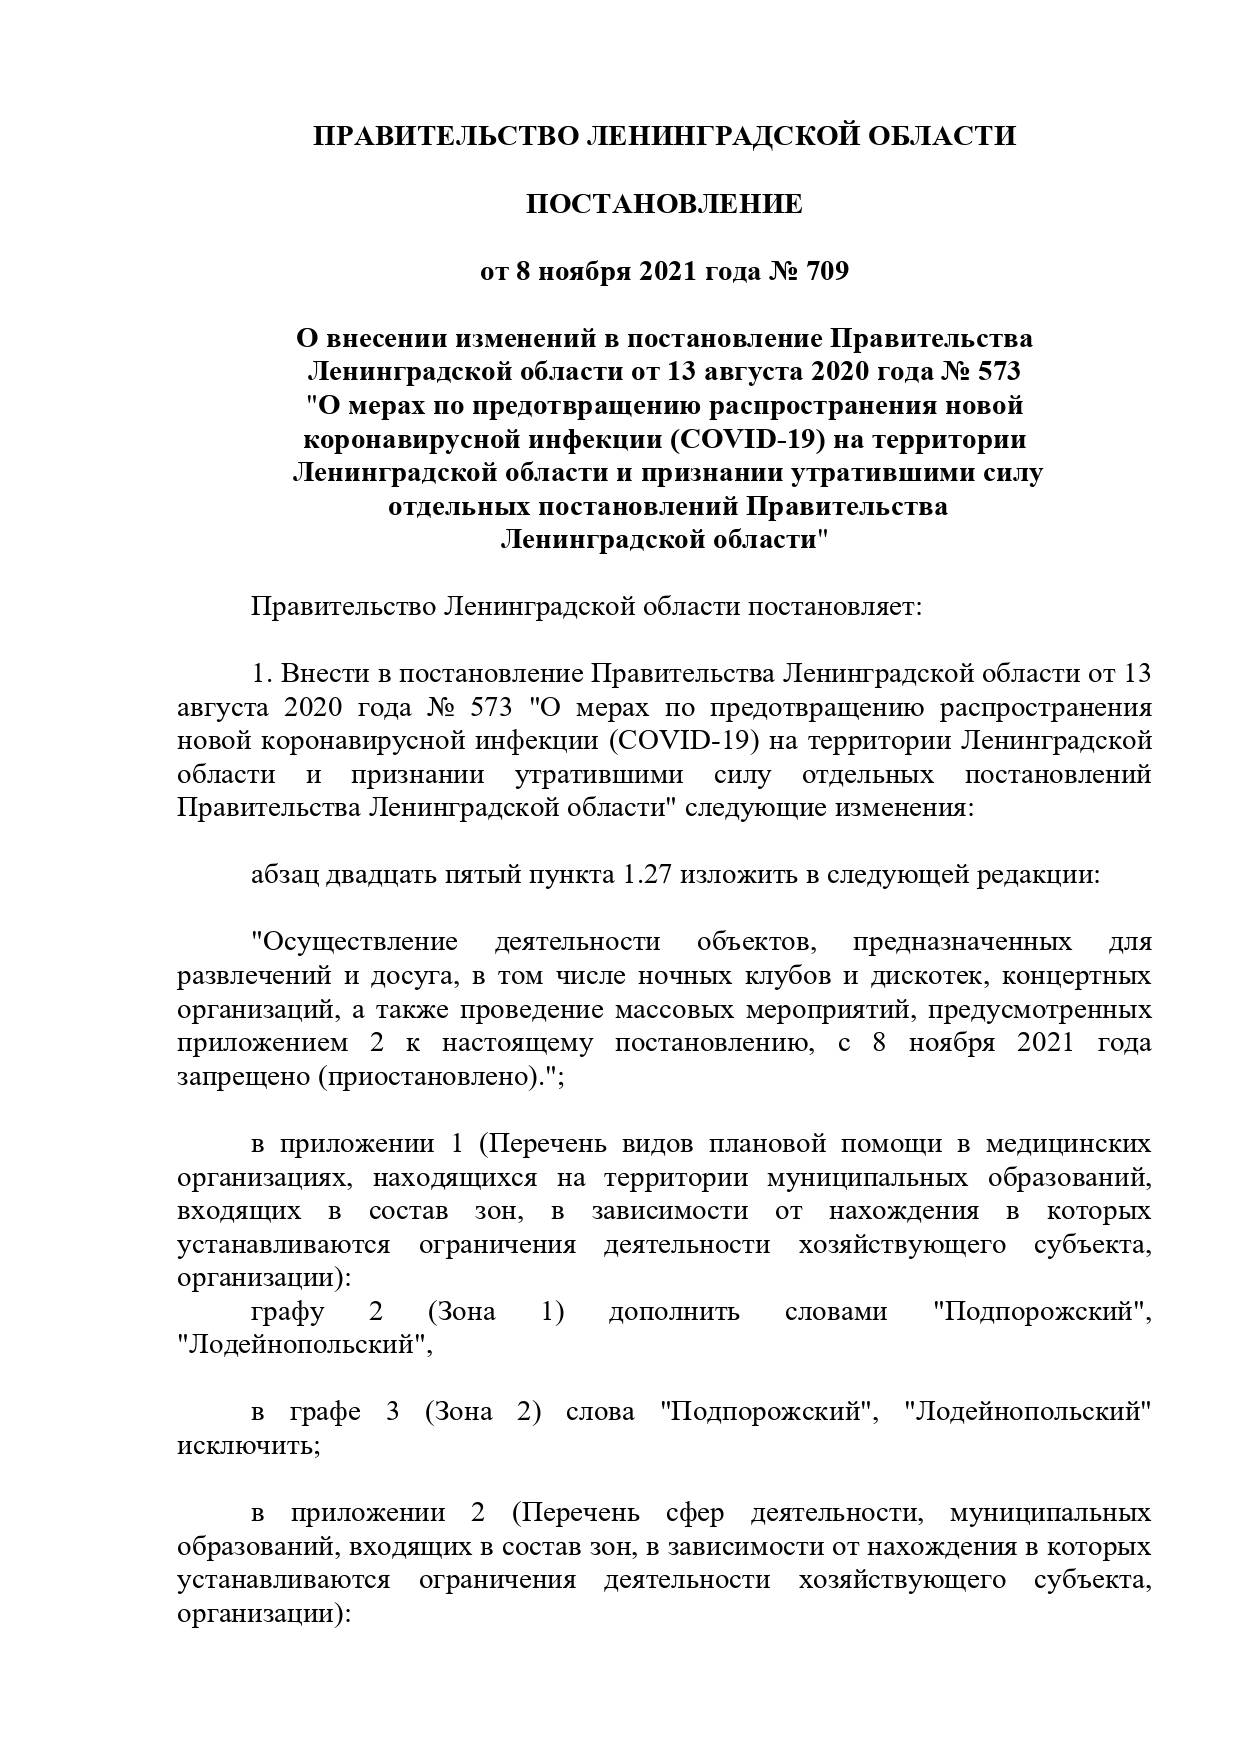 постановление Правительства Ленинградской области от 8 ноября 2021 года № 709